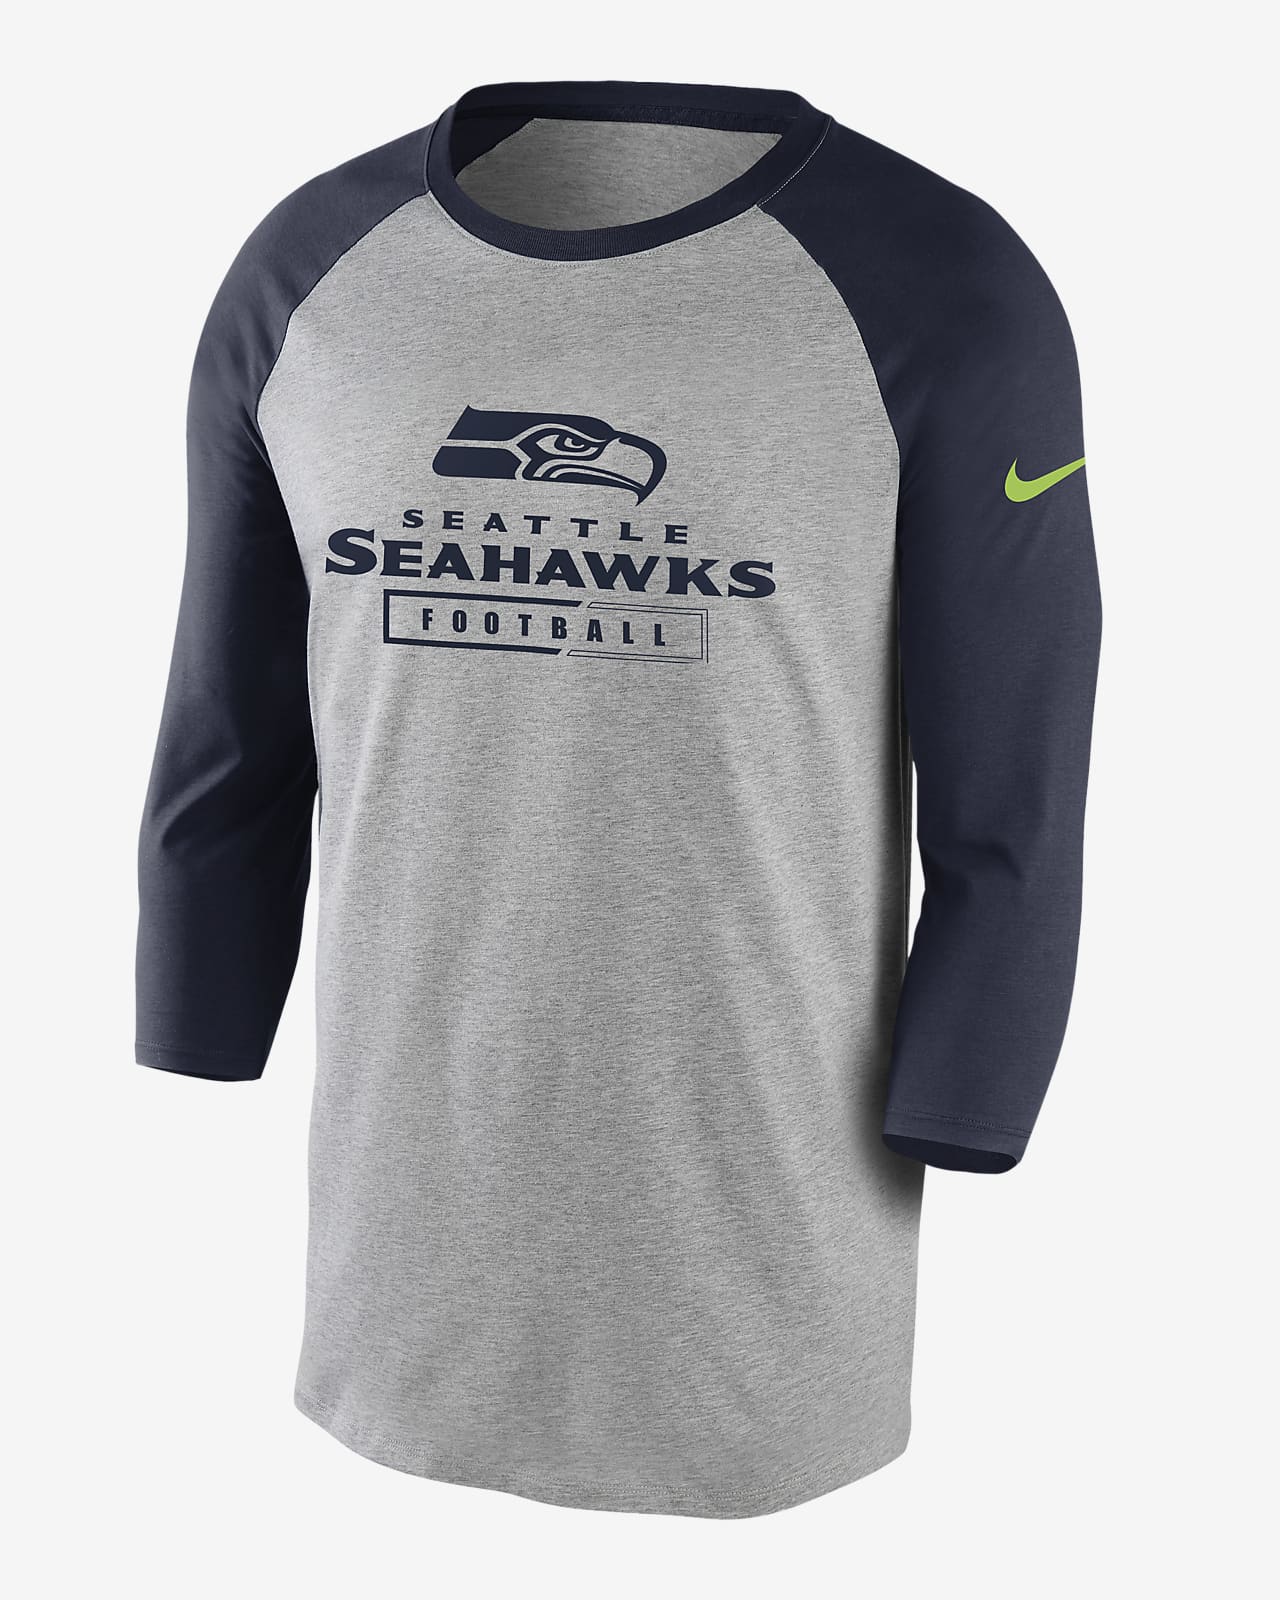 seahawks long sleeve jersey